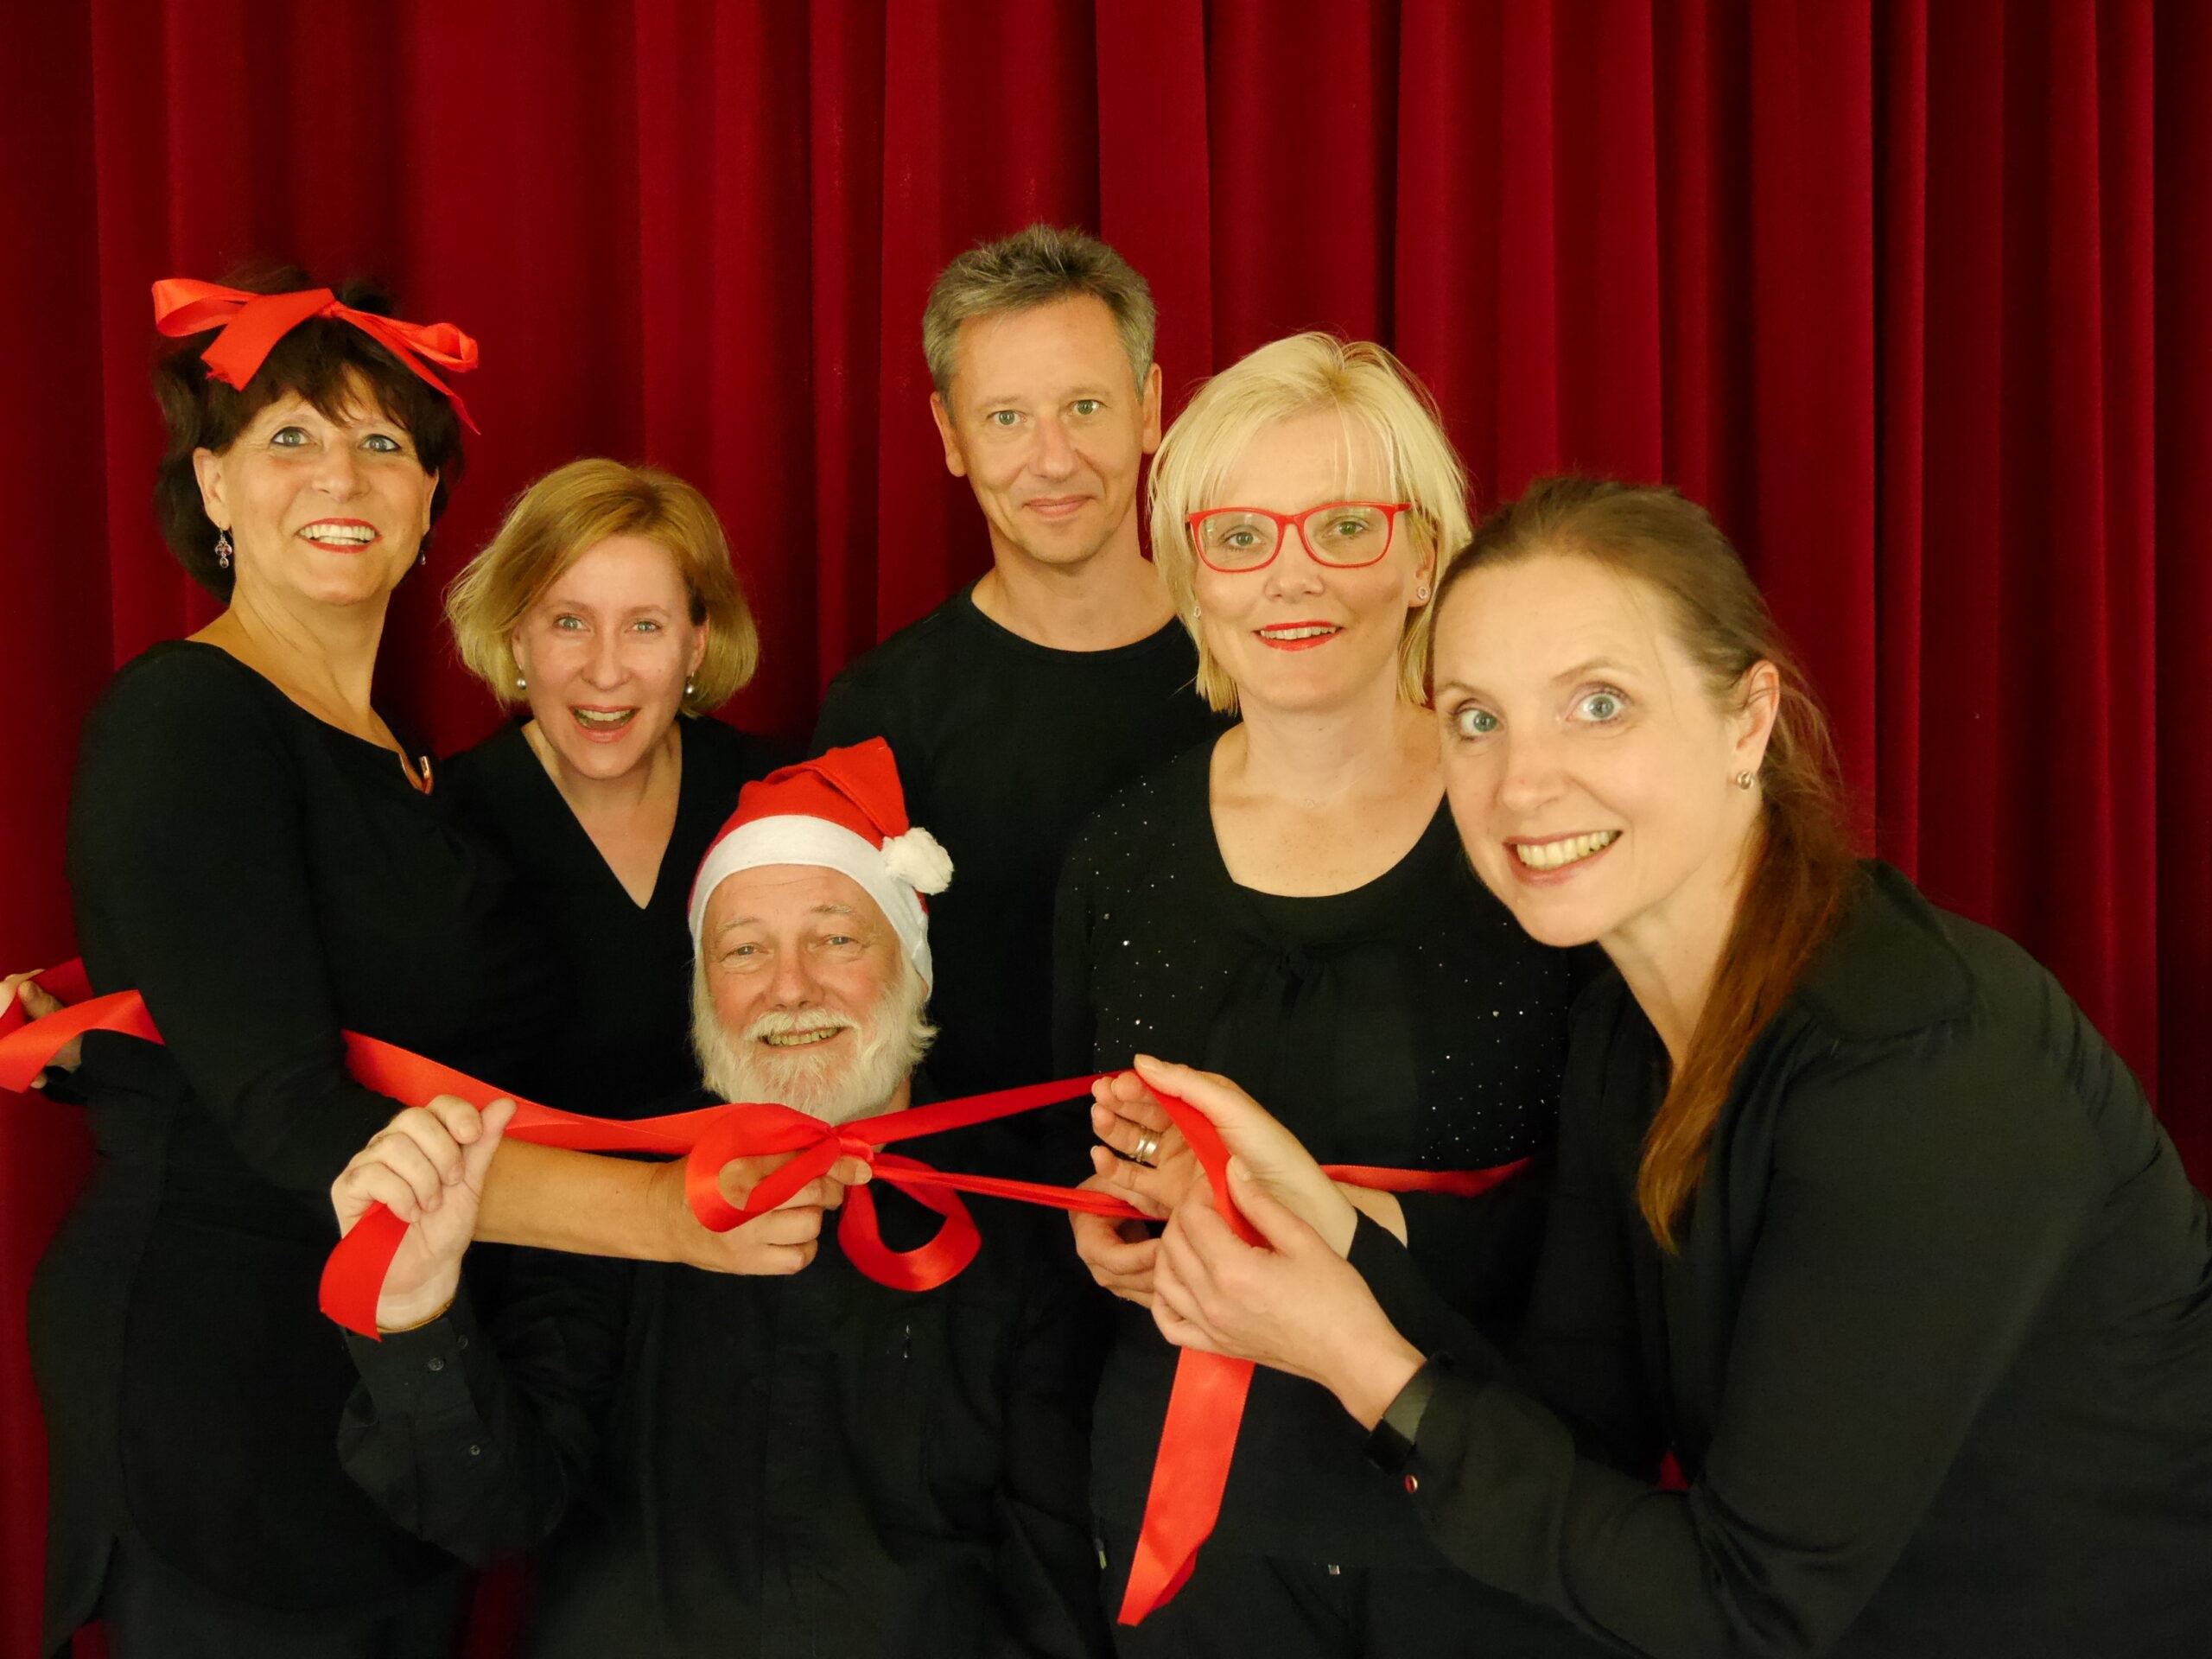 Weihnachtsfeier, Improvisationstheater, ImbH, Improtheater, Leipzig, Sachsen